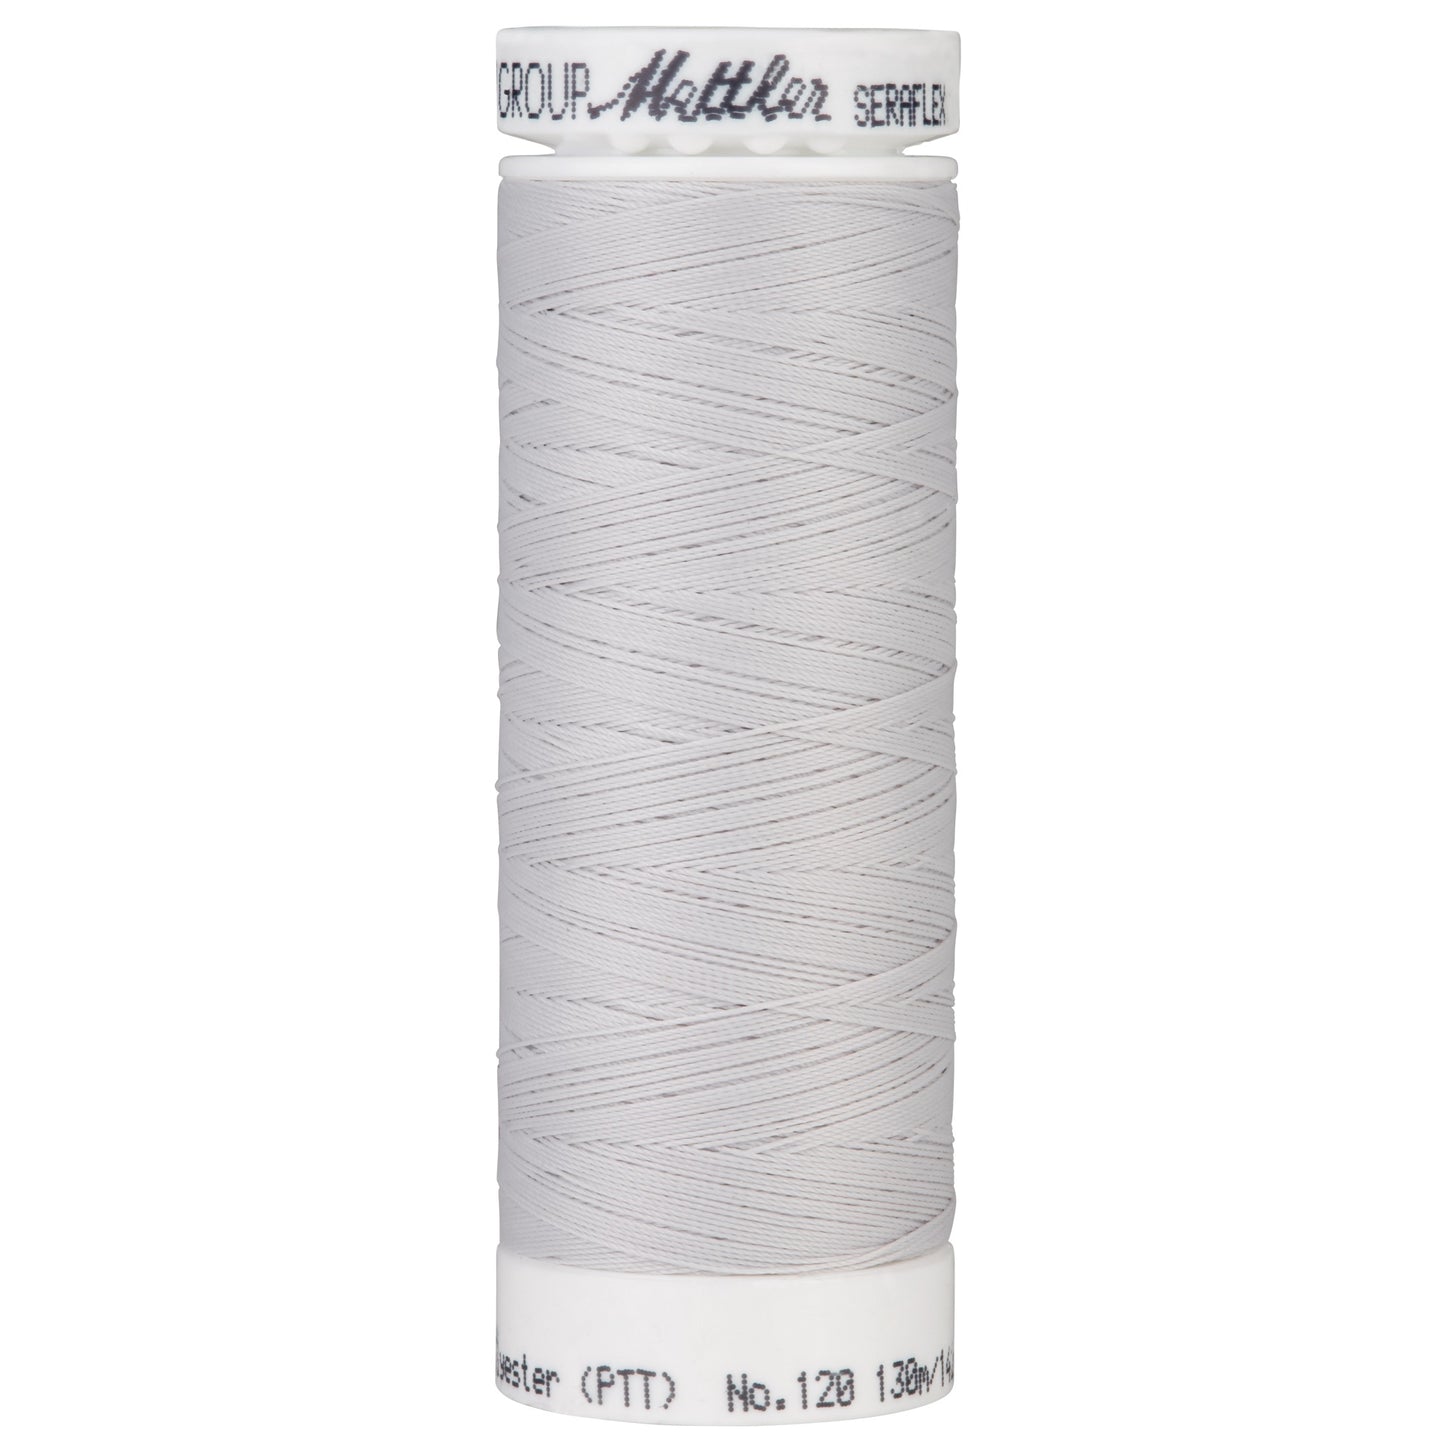 Seraflex - Mettler - Stretch Thread - For Stretchy Seams - 130 Meters - Mistik Grey